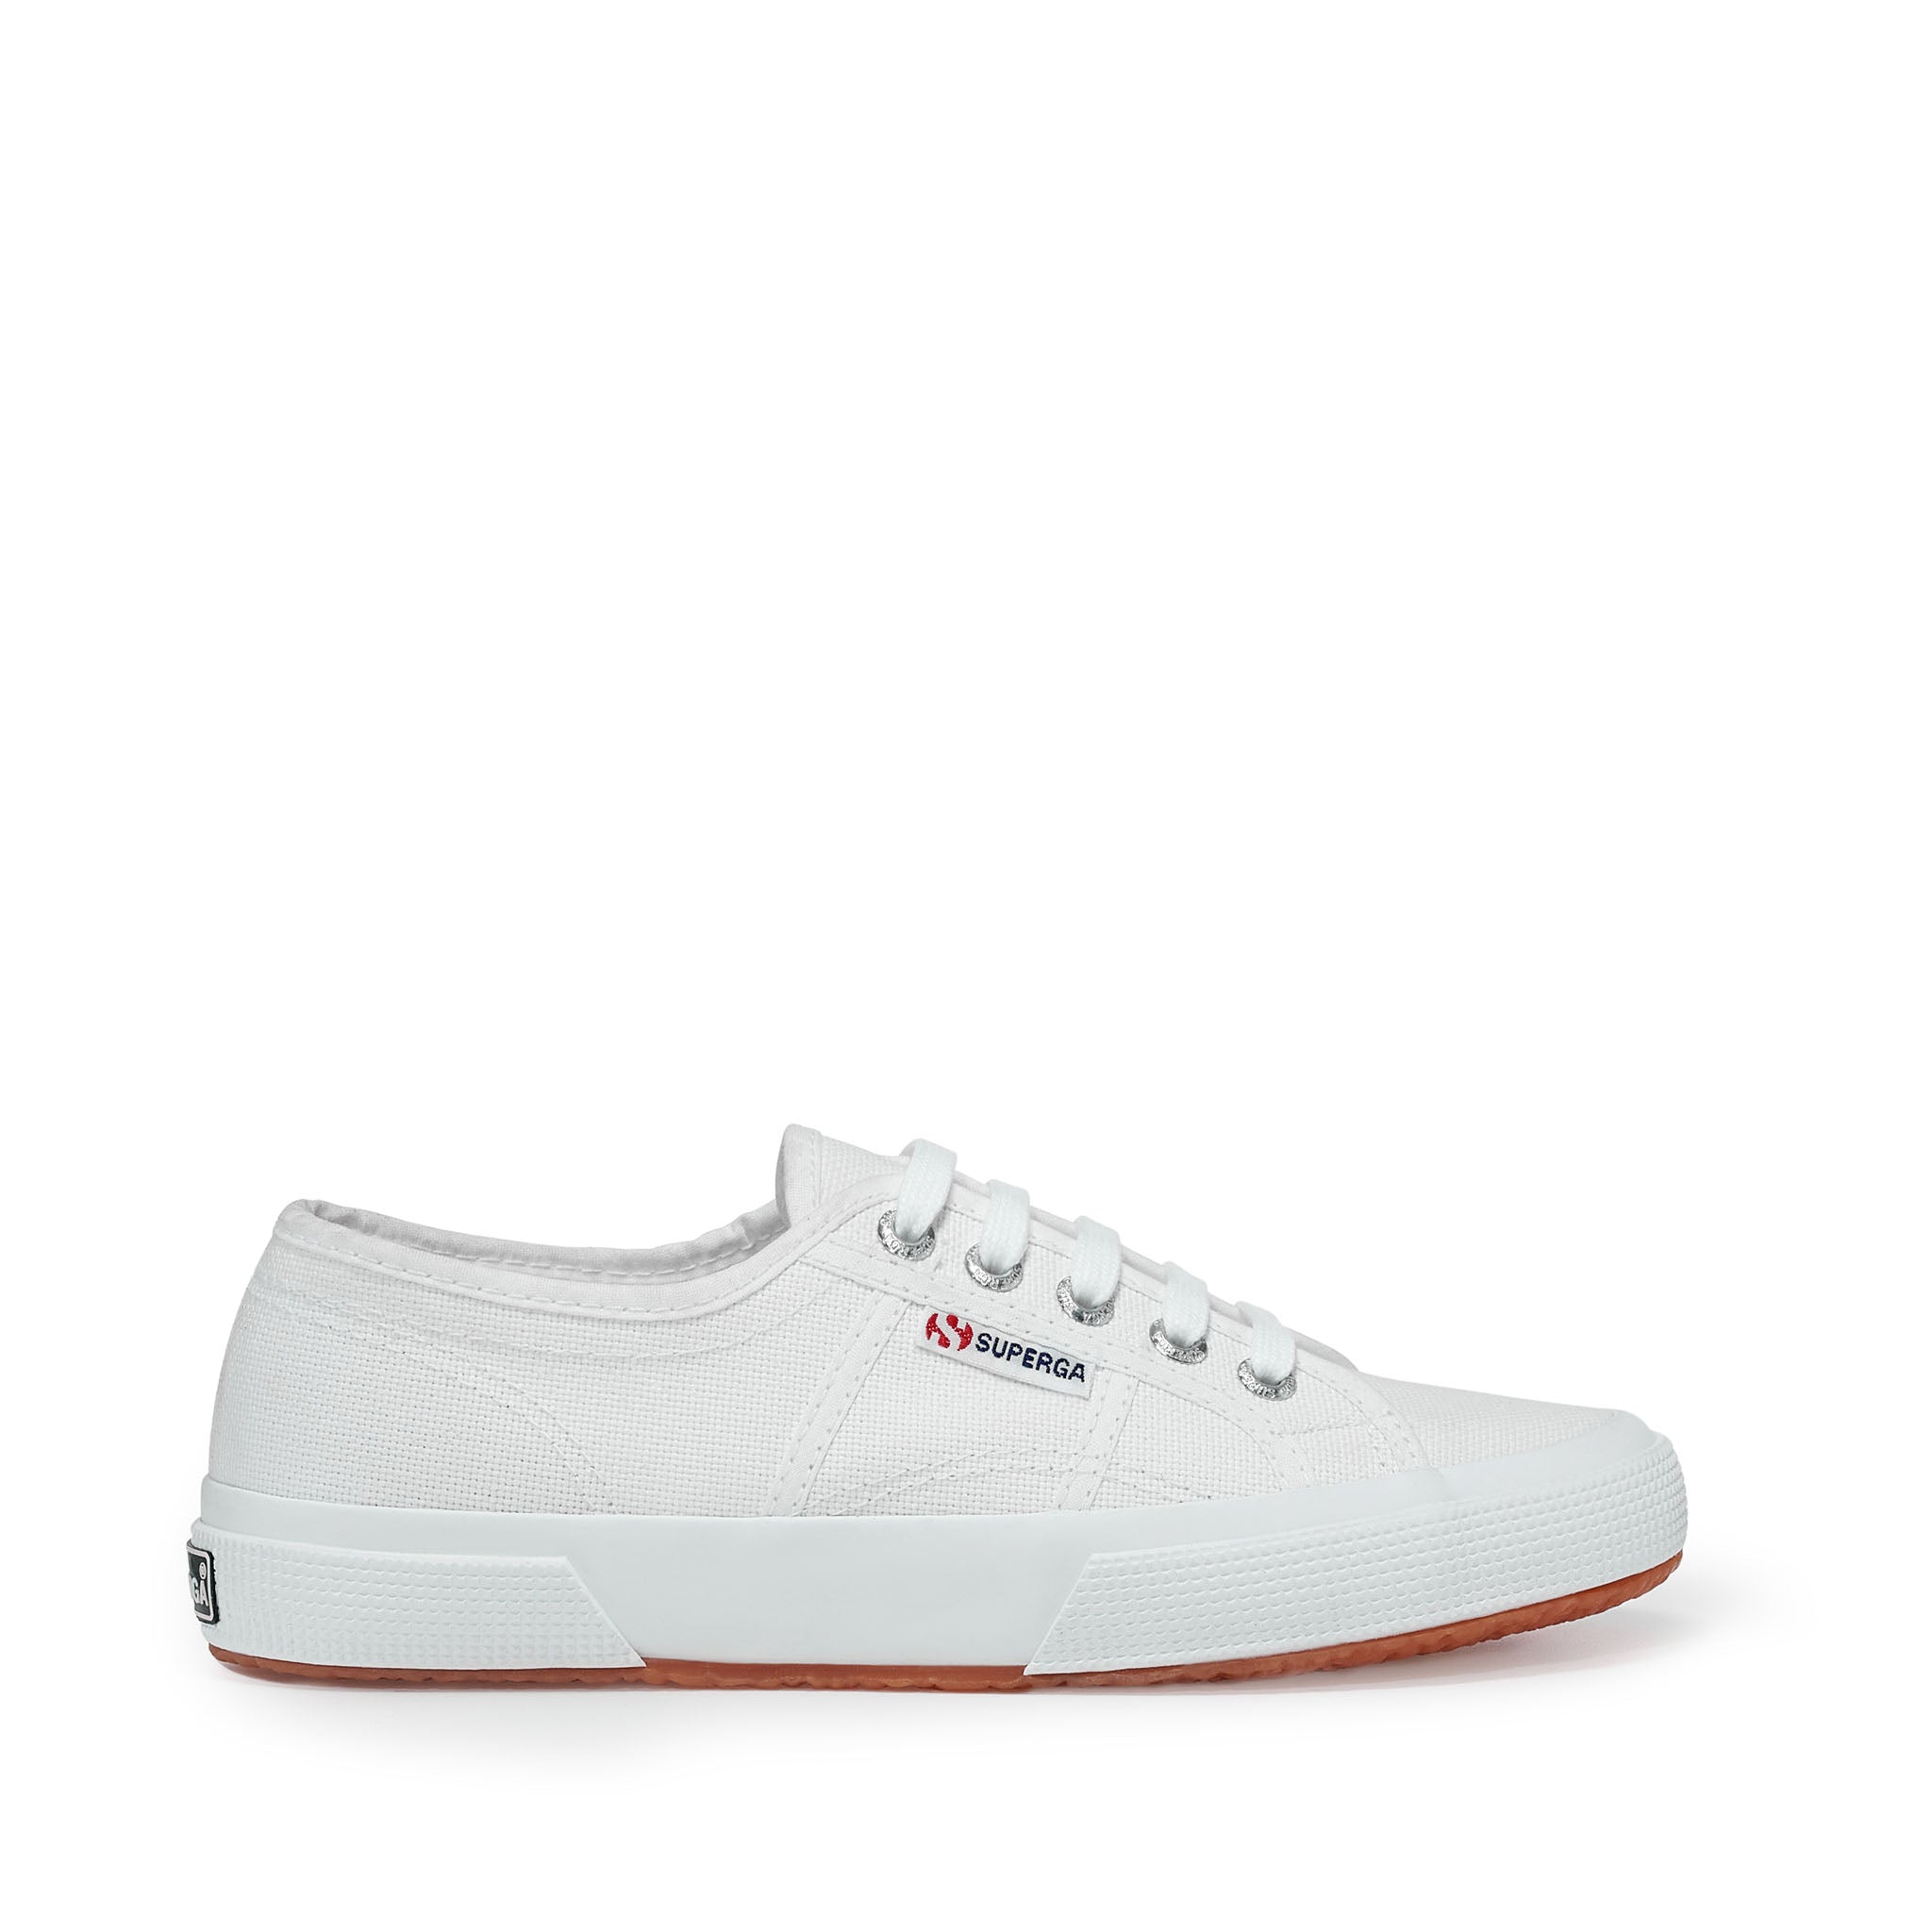 Supreme Men's Sneakers - White - US 10